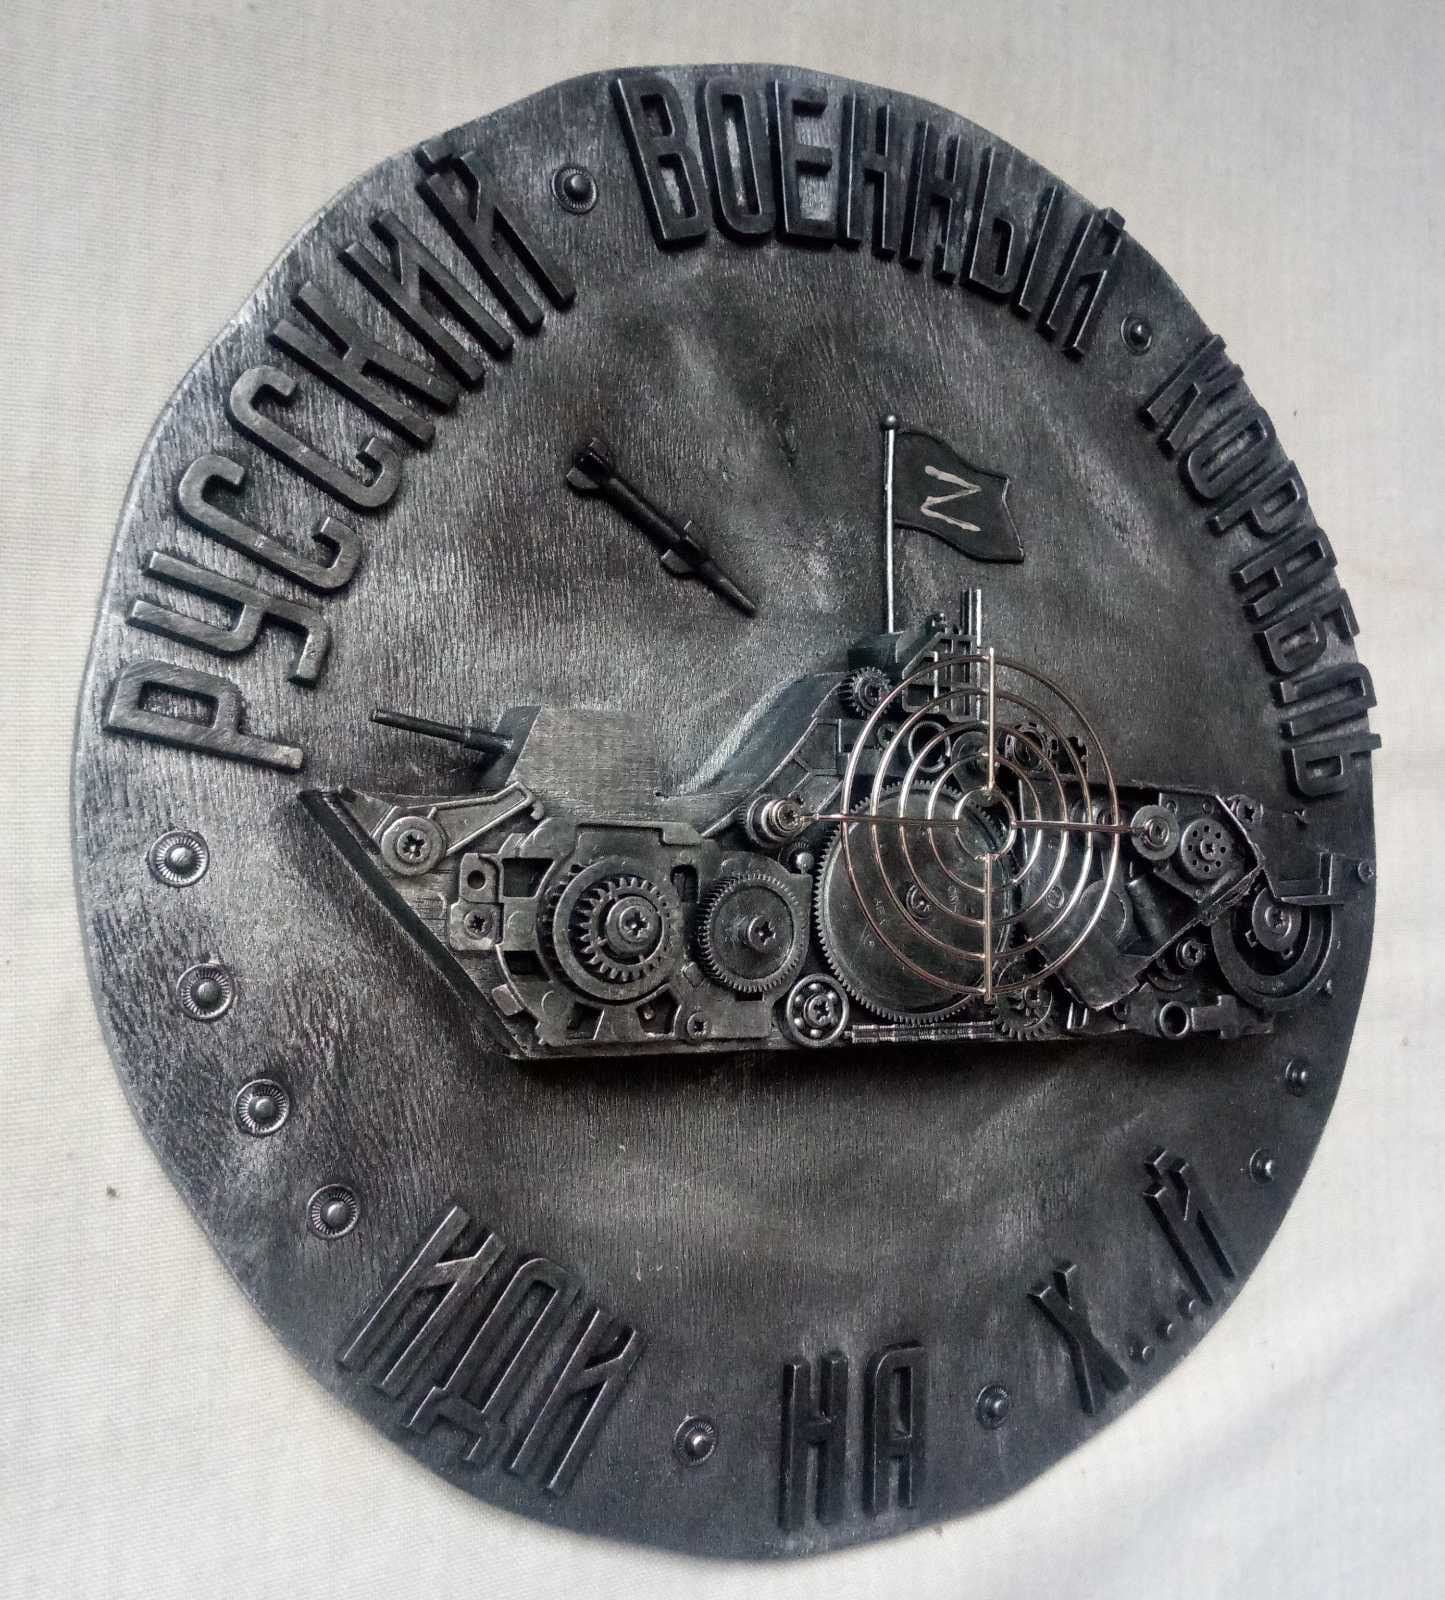 Steampunk ship, warship, army gift, vessel, Ukraine, steampunk, Ukrainian flag, pray for Ukraine, anniversary, glory, invasion, industrial